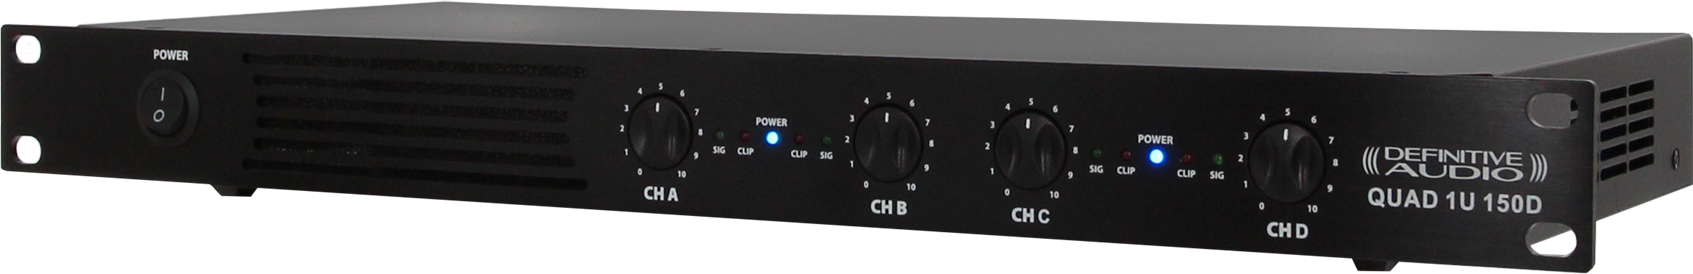 Definitive Audio Quad 1u 150d - Multiple channels power amplifier - Main picture